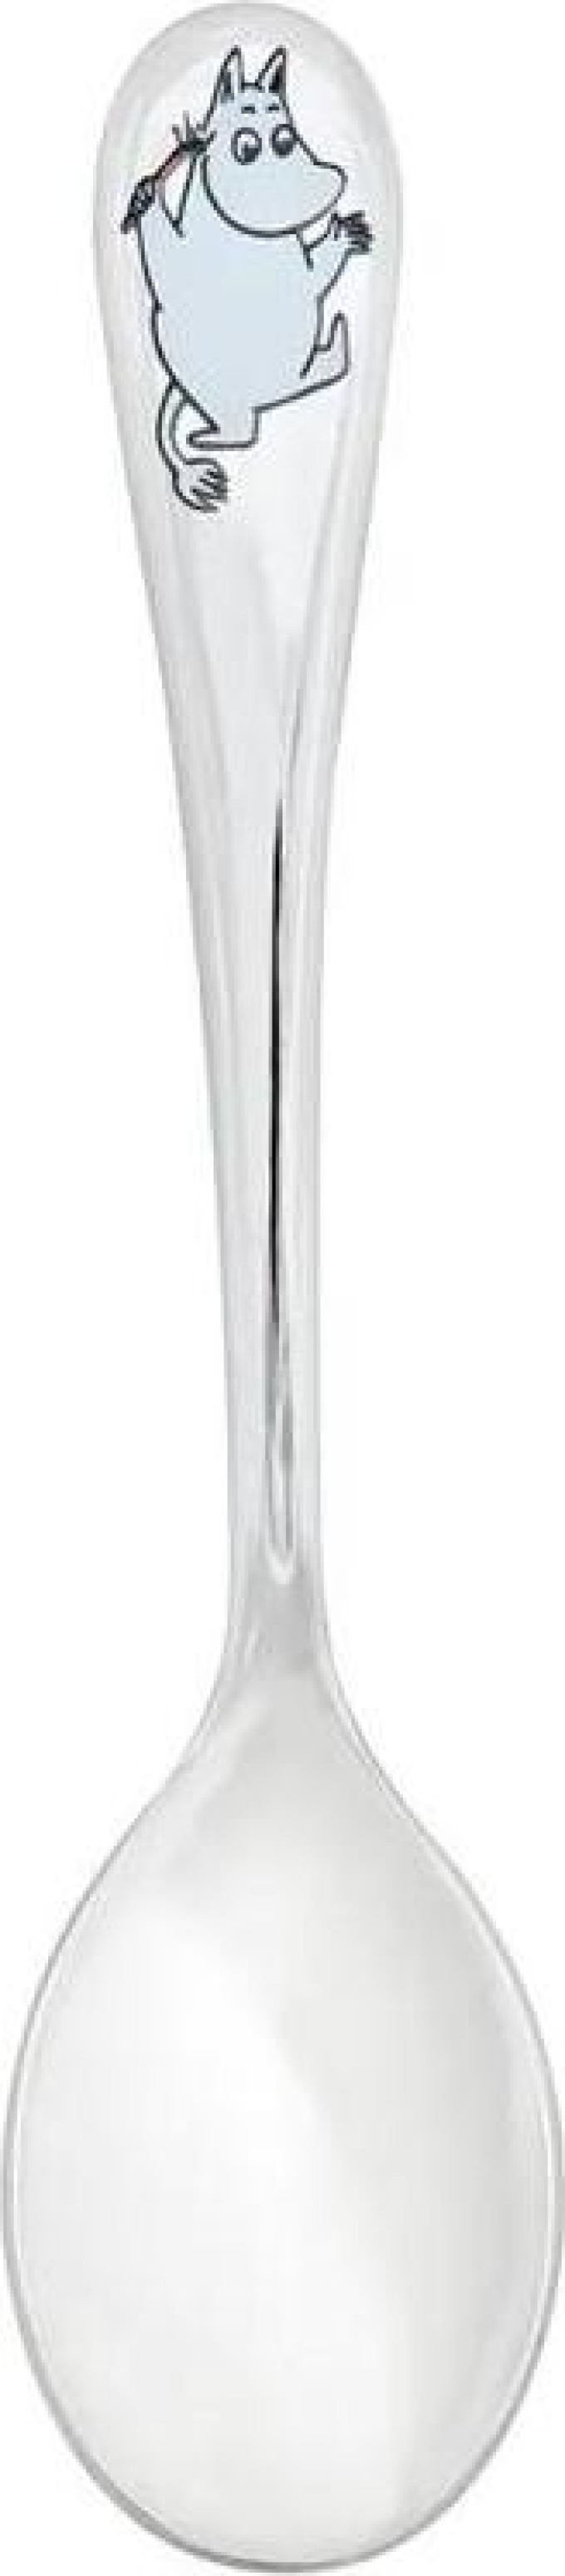 Lžíce Moomin, 17cm